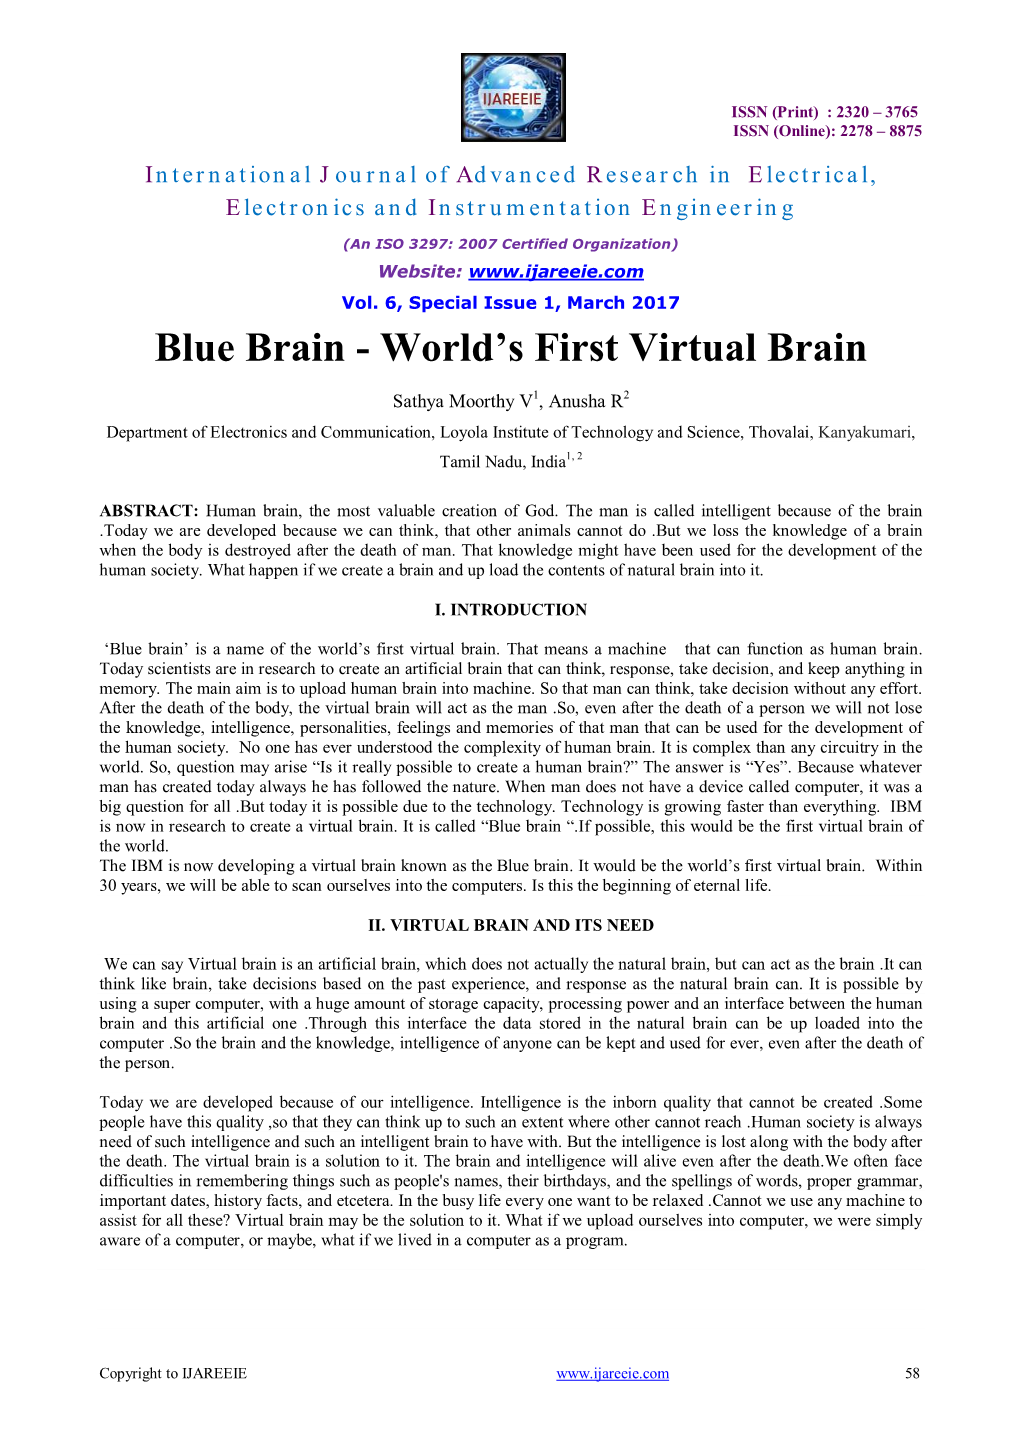 Blue Brain - World’S First Virtual Brain